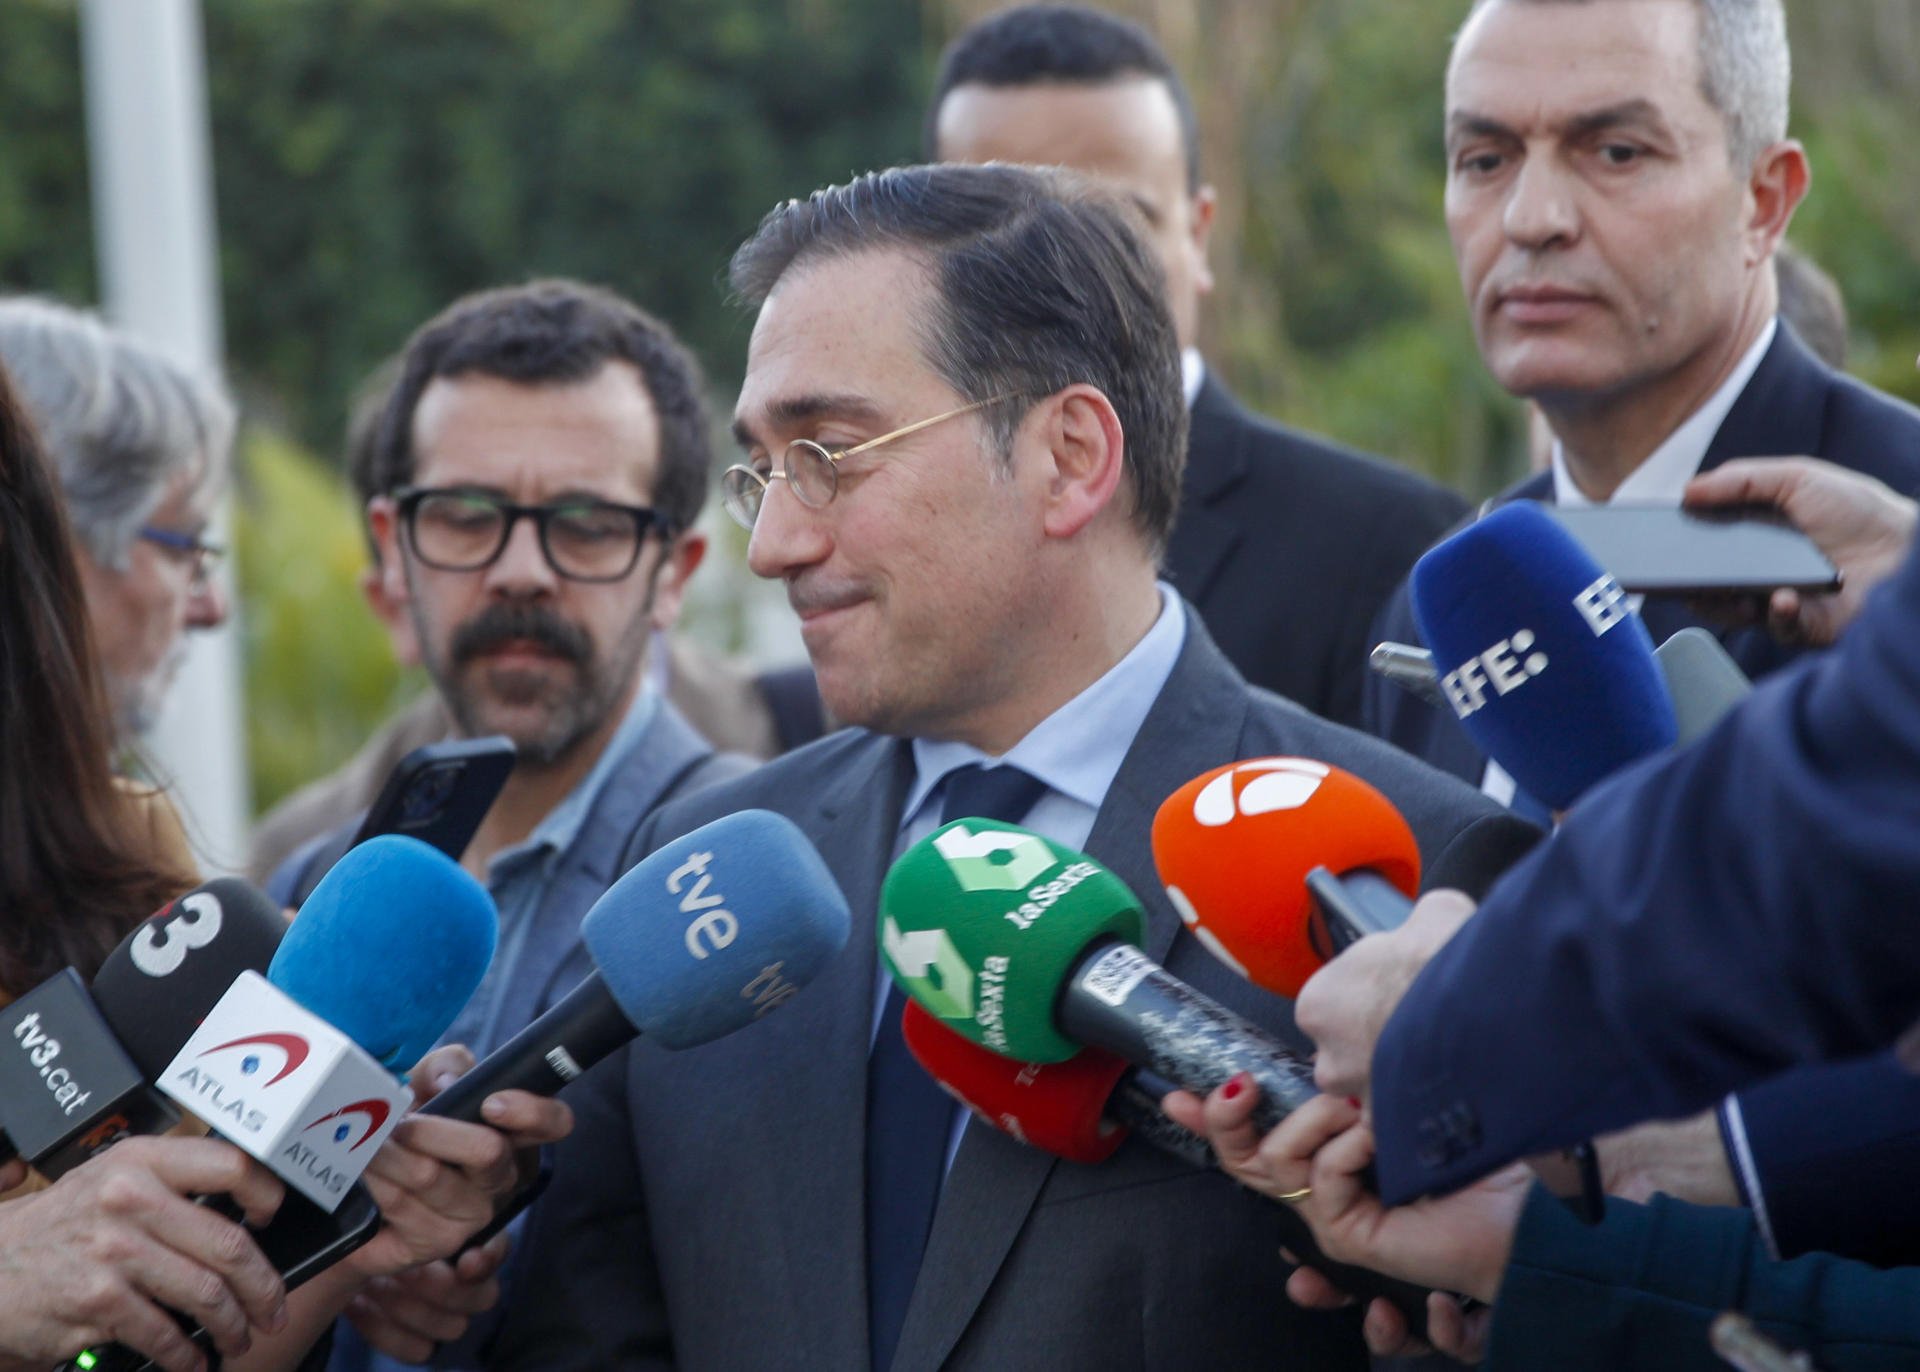 El ridículo del ministro de Exteriores español en Marruecos | VÍDEO